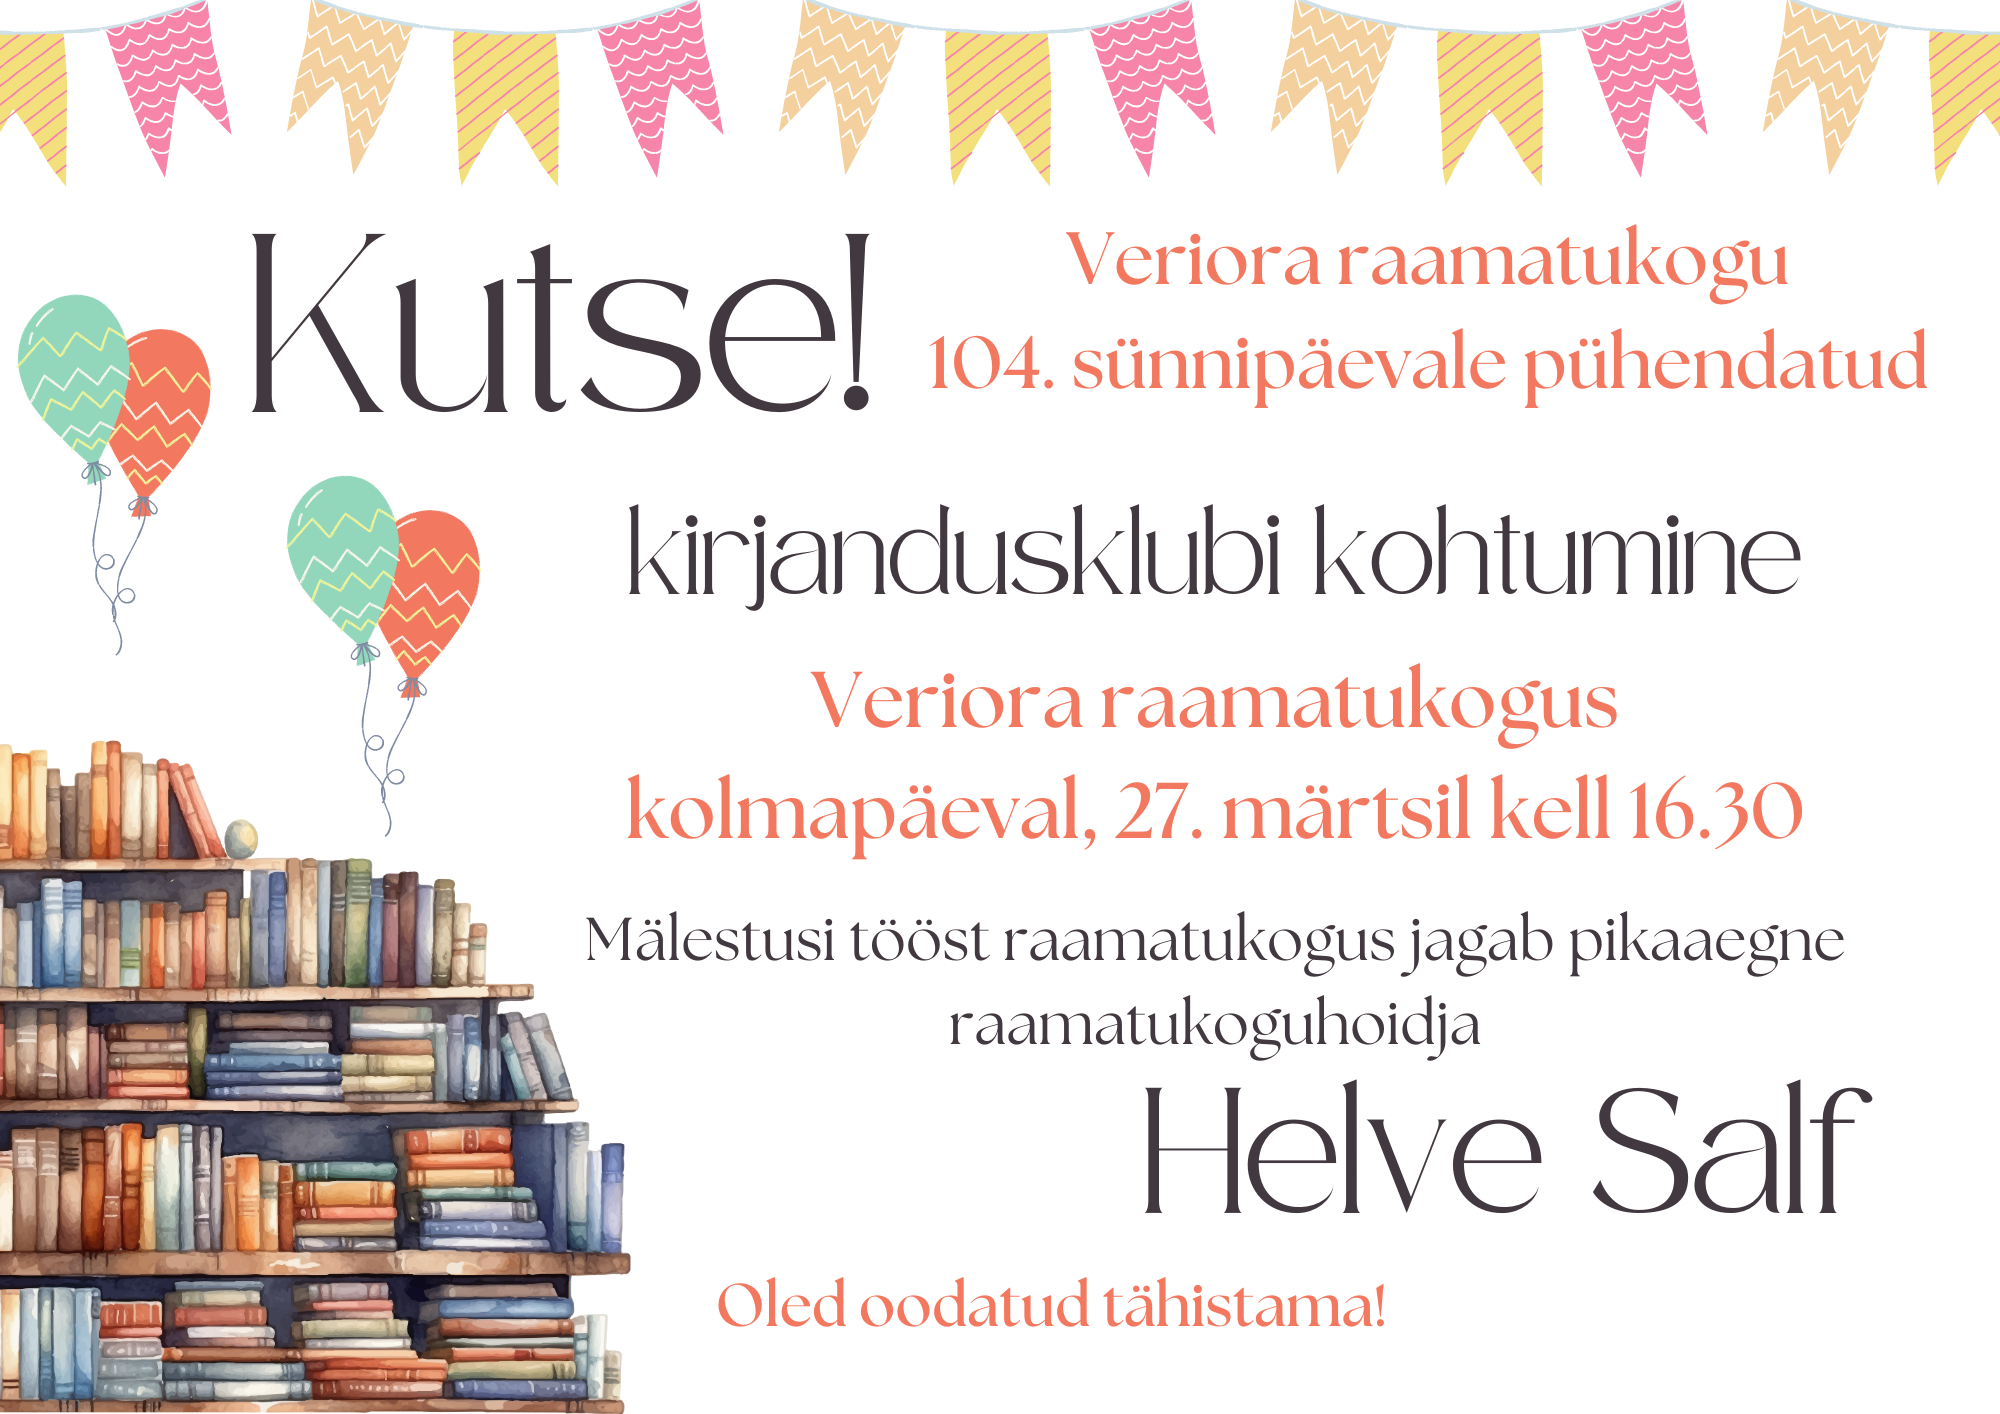 Veriora raamatukogu 104. sünnipäevale pühendatud kirjandusklubi kohtumine @ Veriora raamatukogu | Veriora | Põlva maakond | Eesti